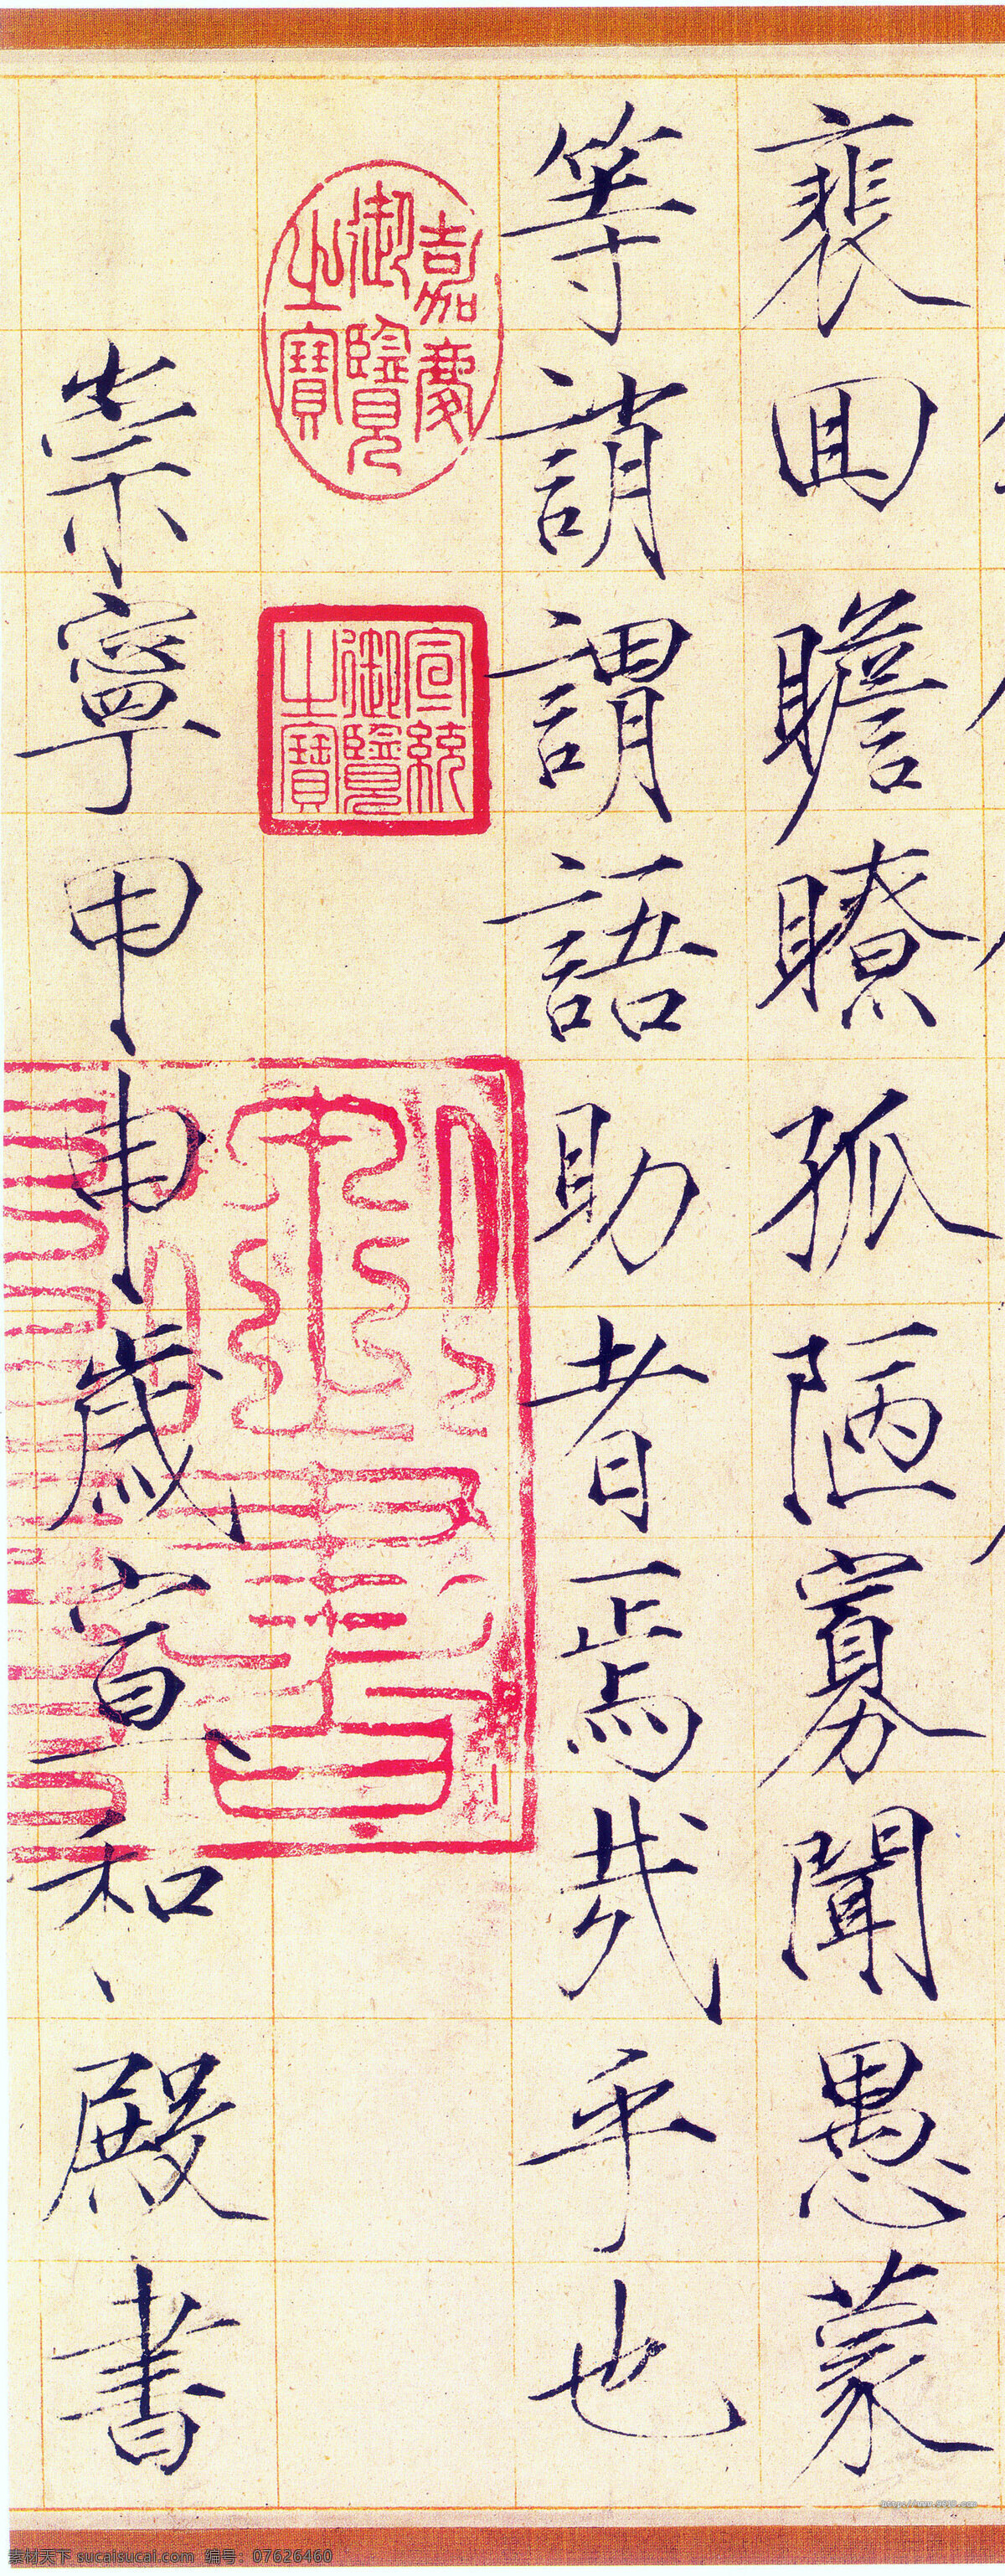 千字文 宋徽宗 古典 传统文化 宋朝 文化艺术 绘画书法